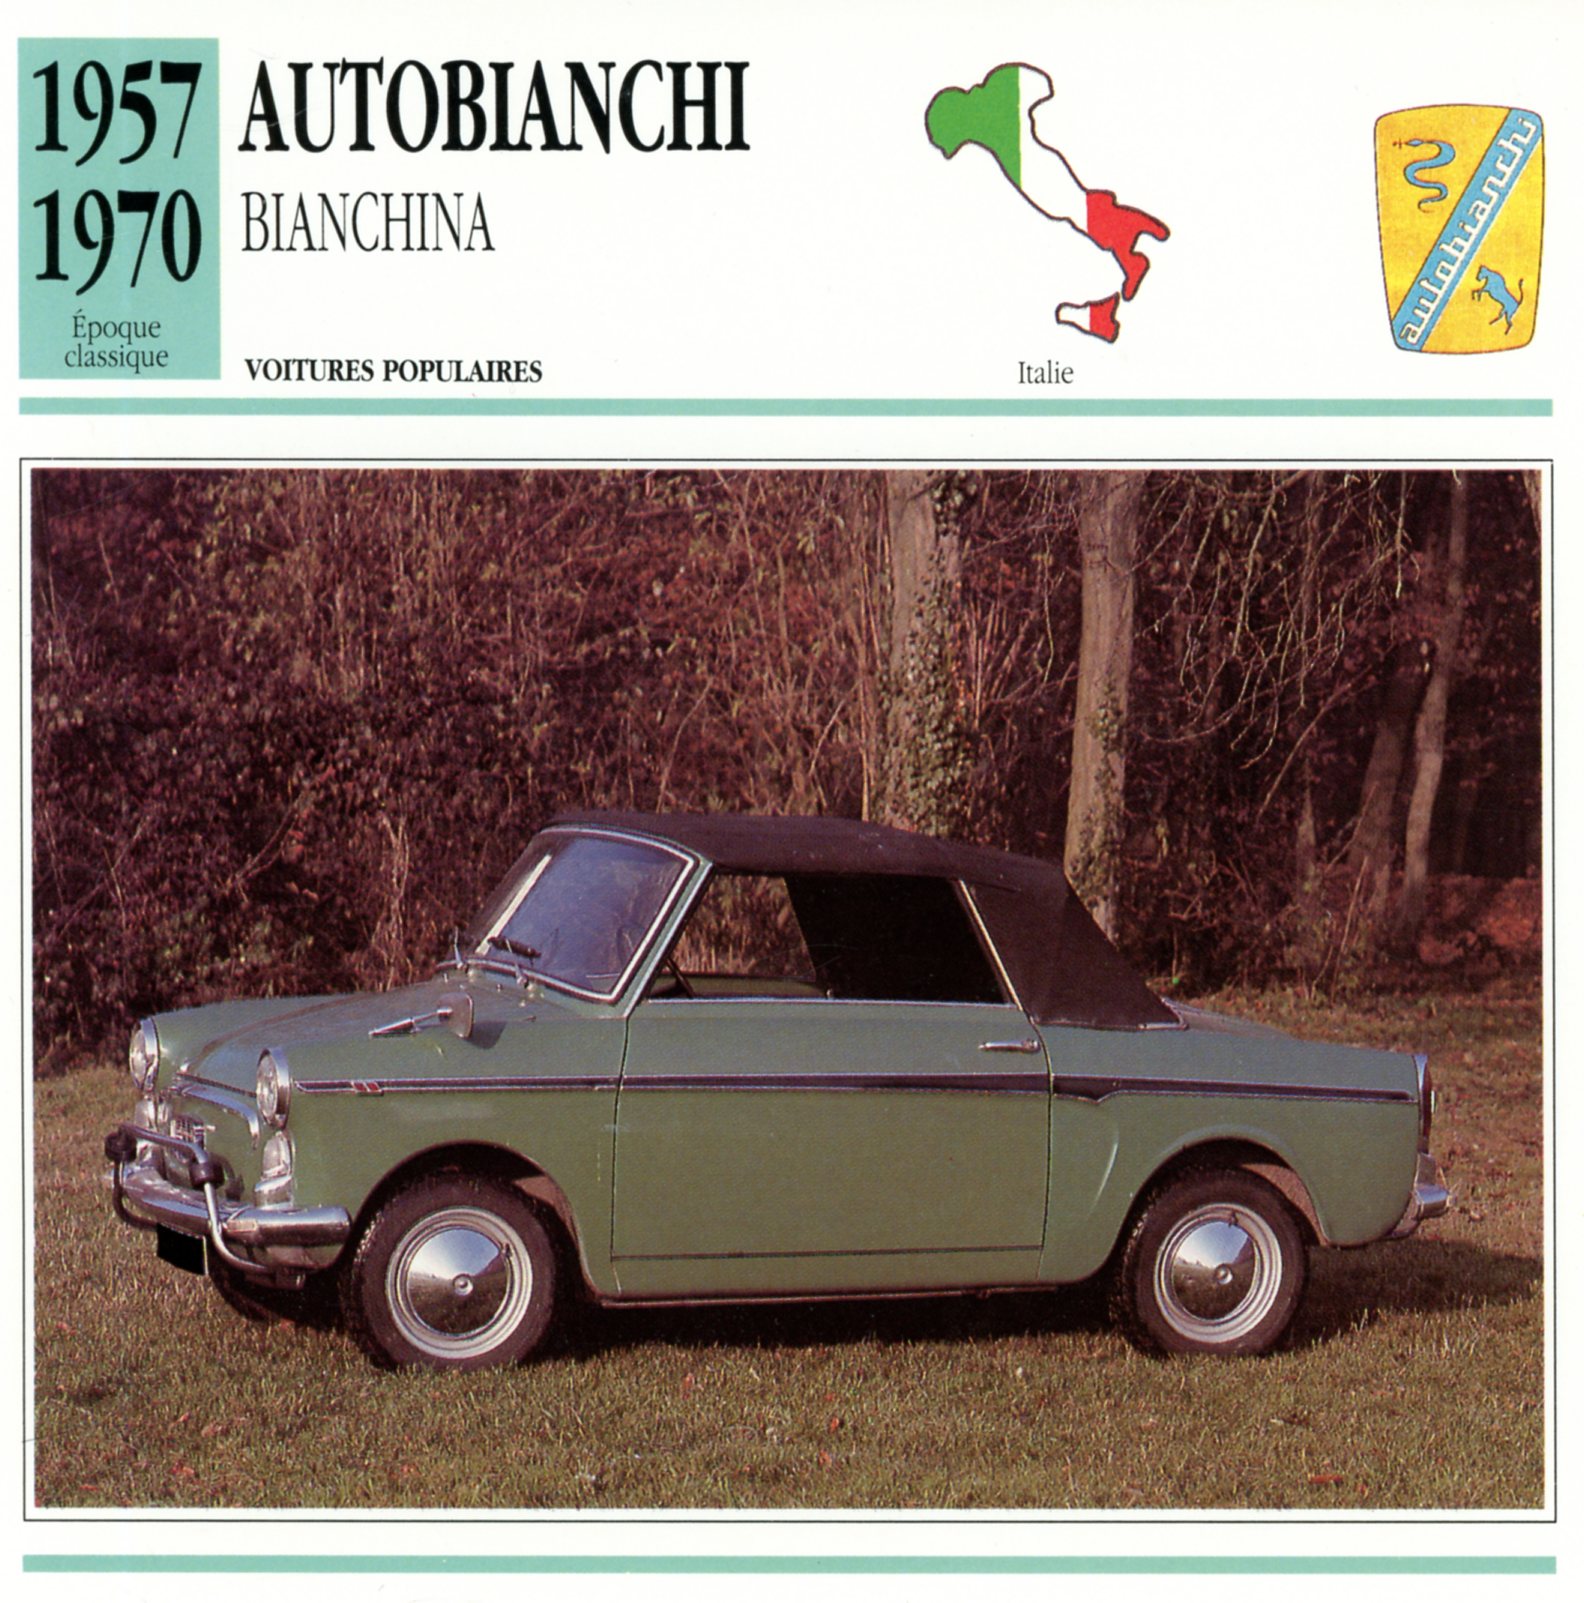 FICHE-AUTO-AUTOBIANCHI-BIANCHINA-1957-1970-LEMASTERBROCKERS-CARS-CARD